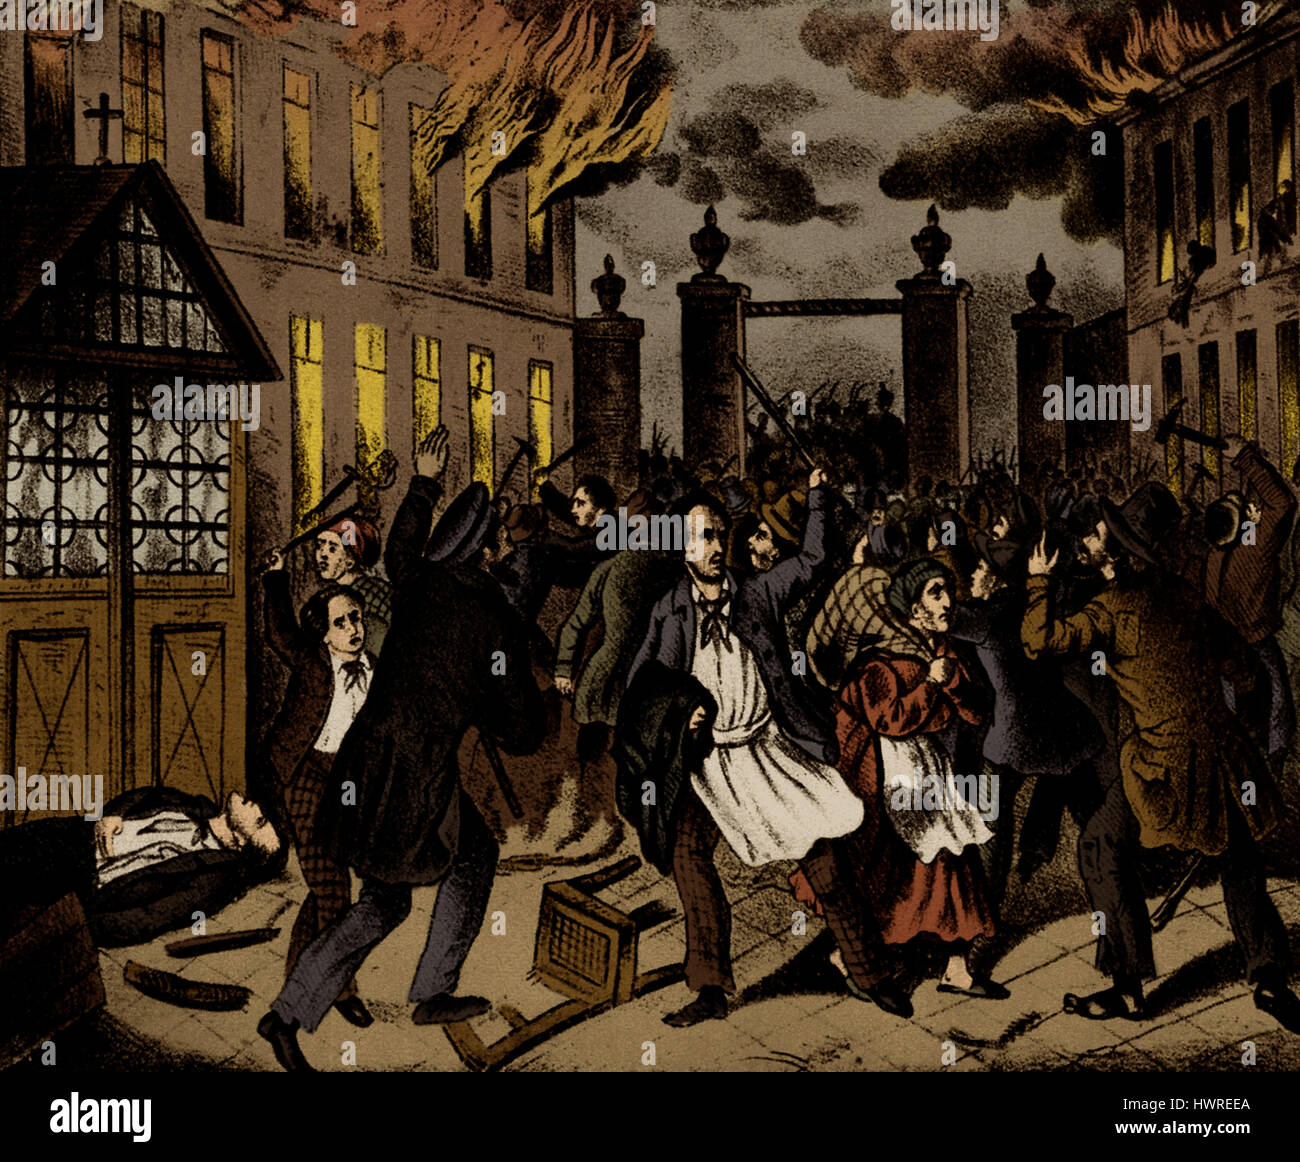 Révolution autrichienne : des barricades sur St. Marxer Linie, Vienne. 1848. Près de murs de la ville. La lithographie. De mars 1848 à juillet 1849, l'Empire autrichien des Habsbourg était menacée par les mouvements révolutionnaires Banque D'Images